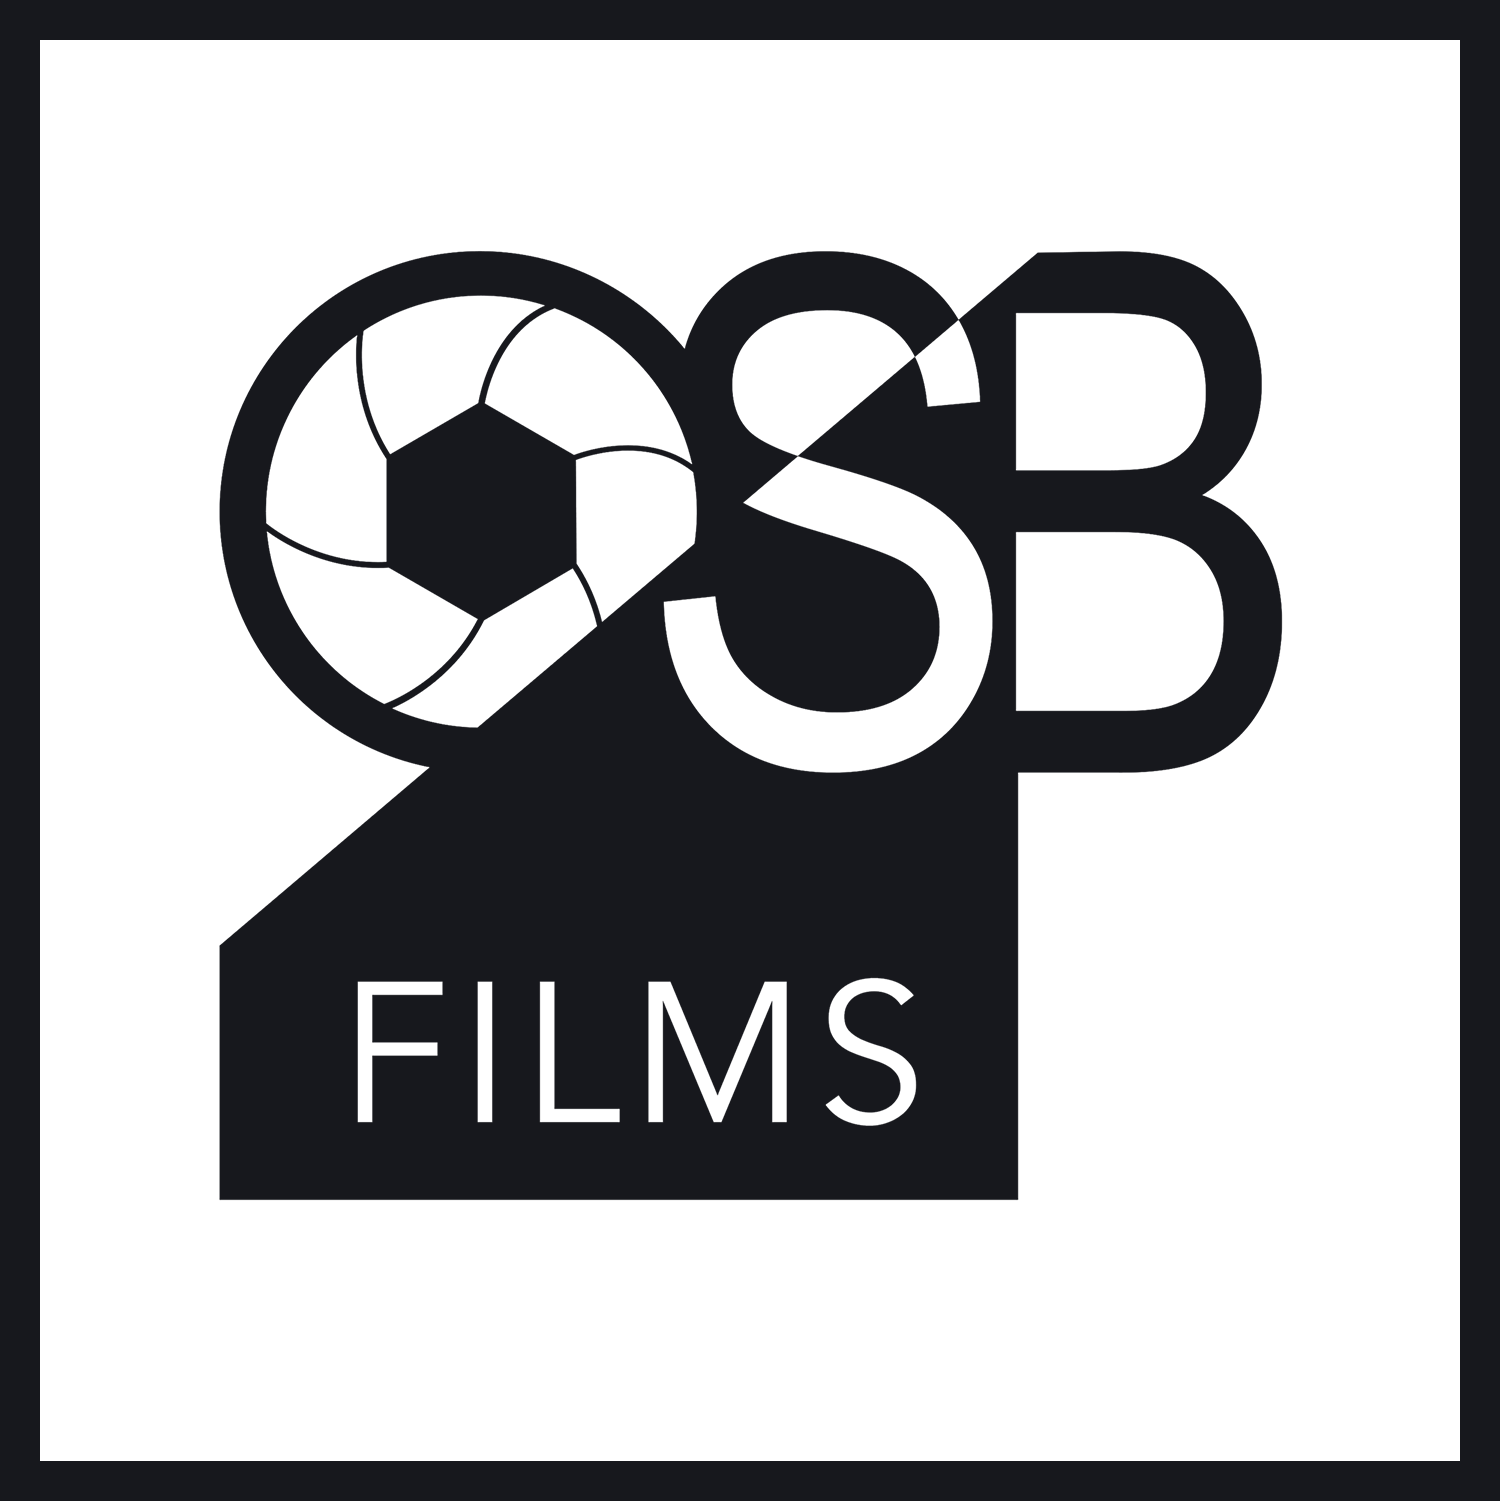 OSB Films